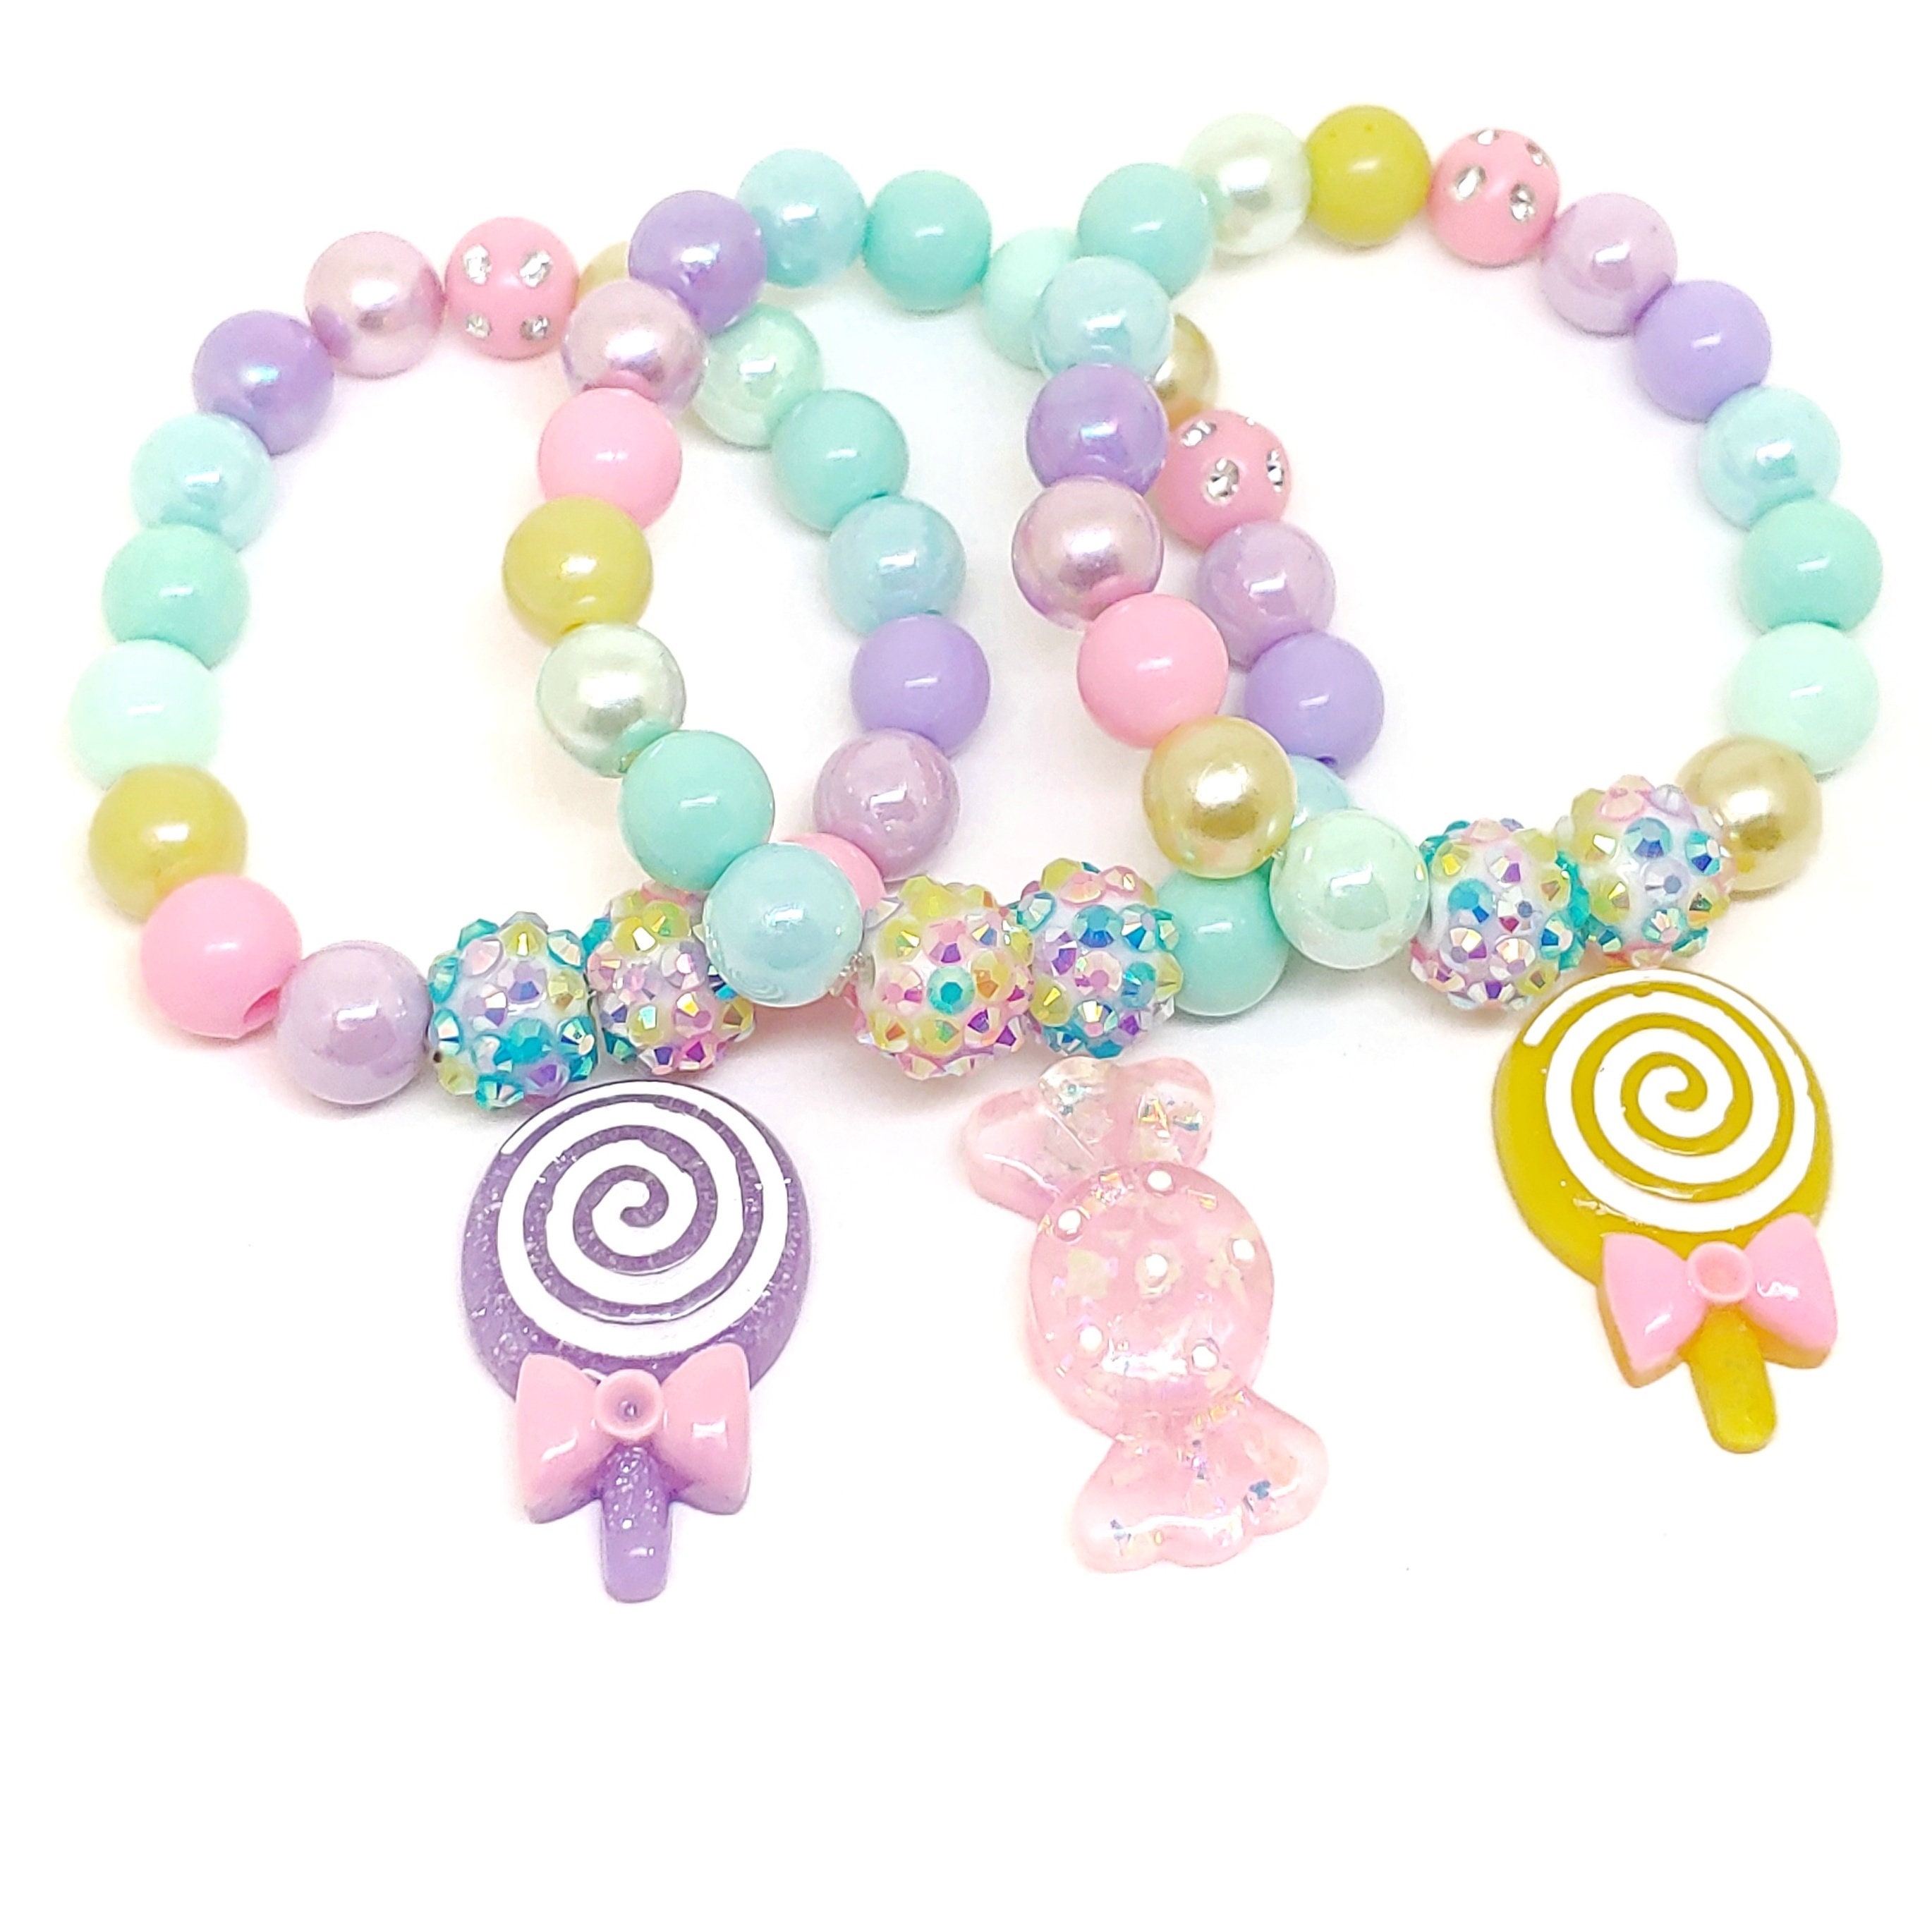 Candy Bracelet Party Favors, 10ct